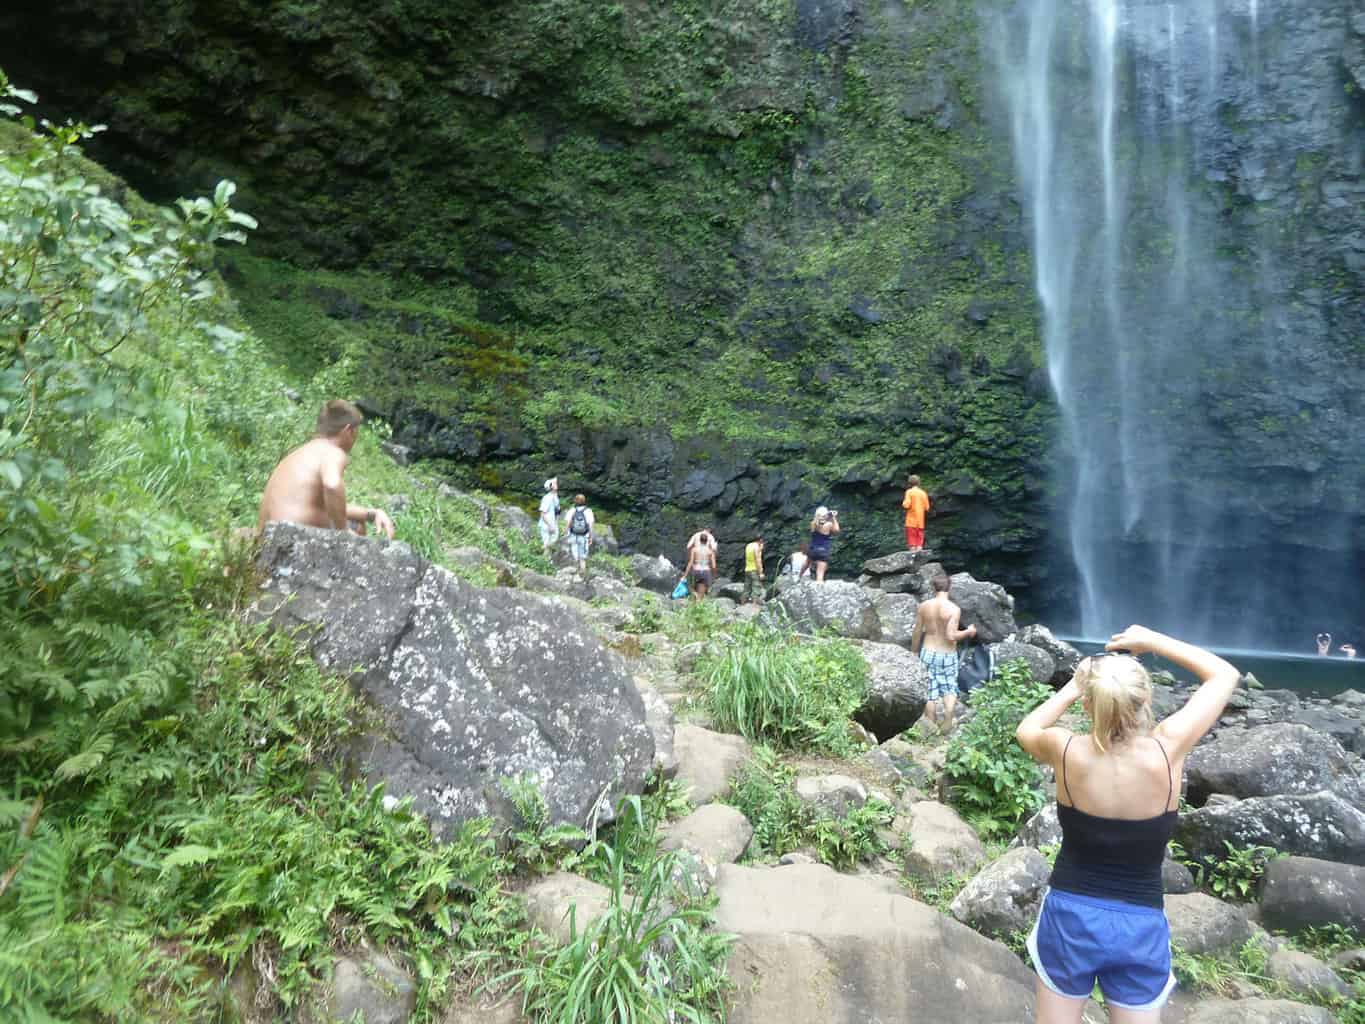 Hanakapiai Falls